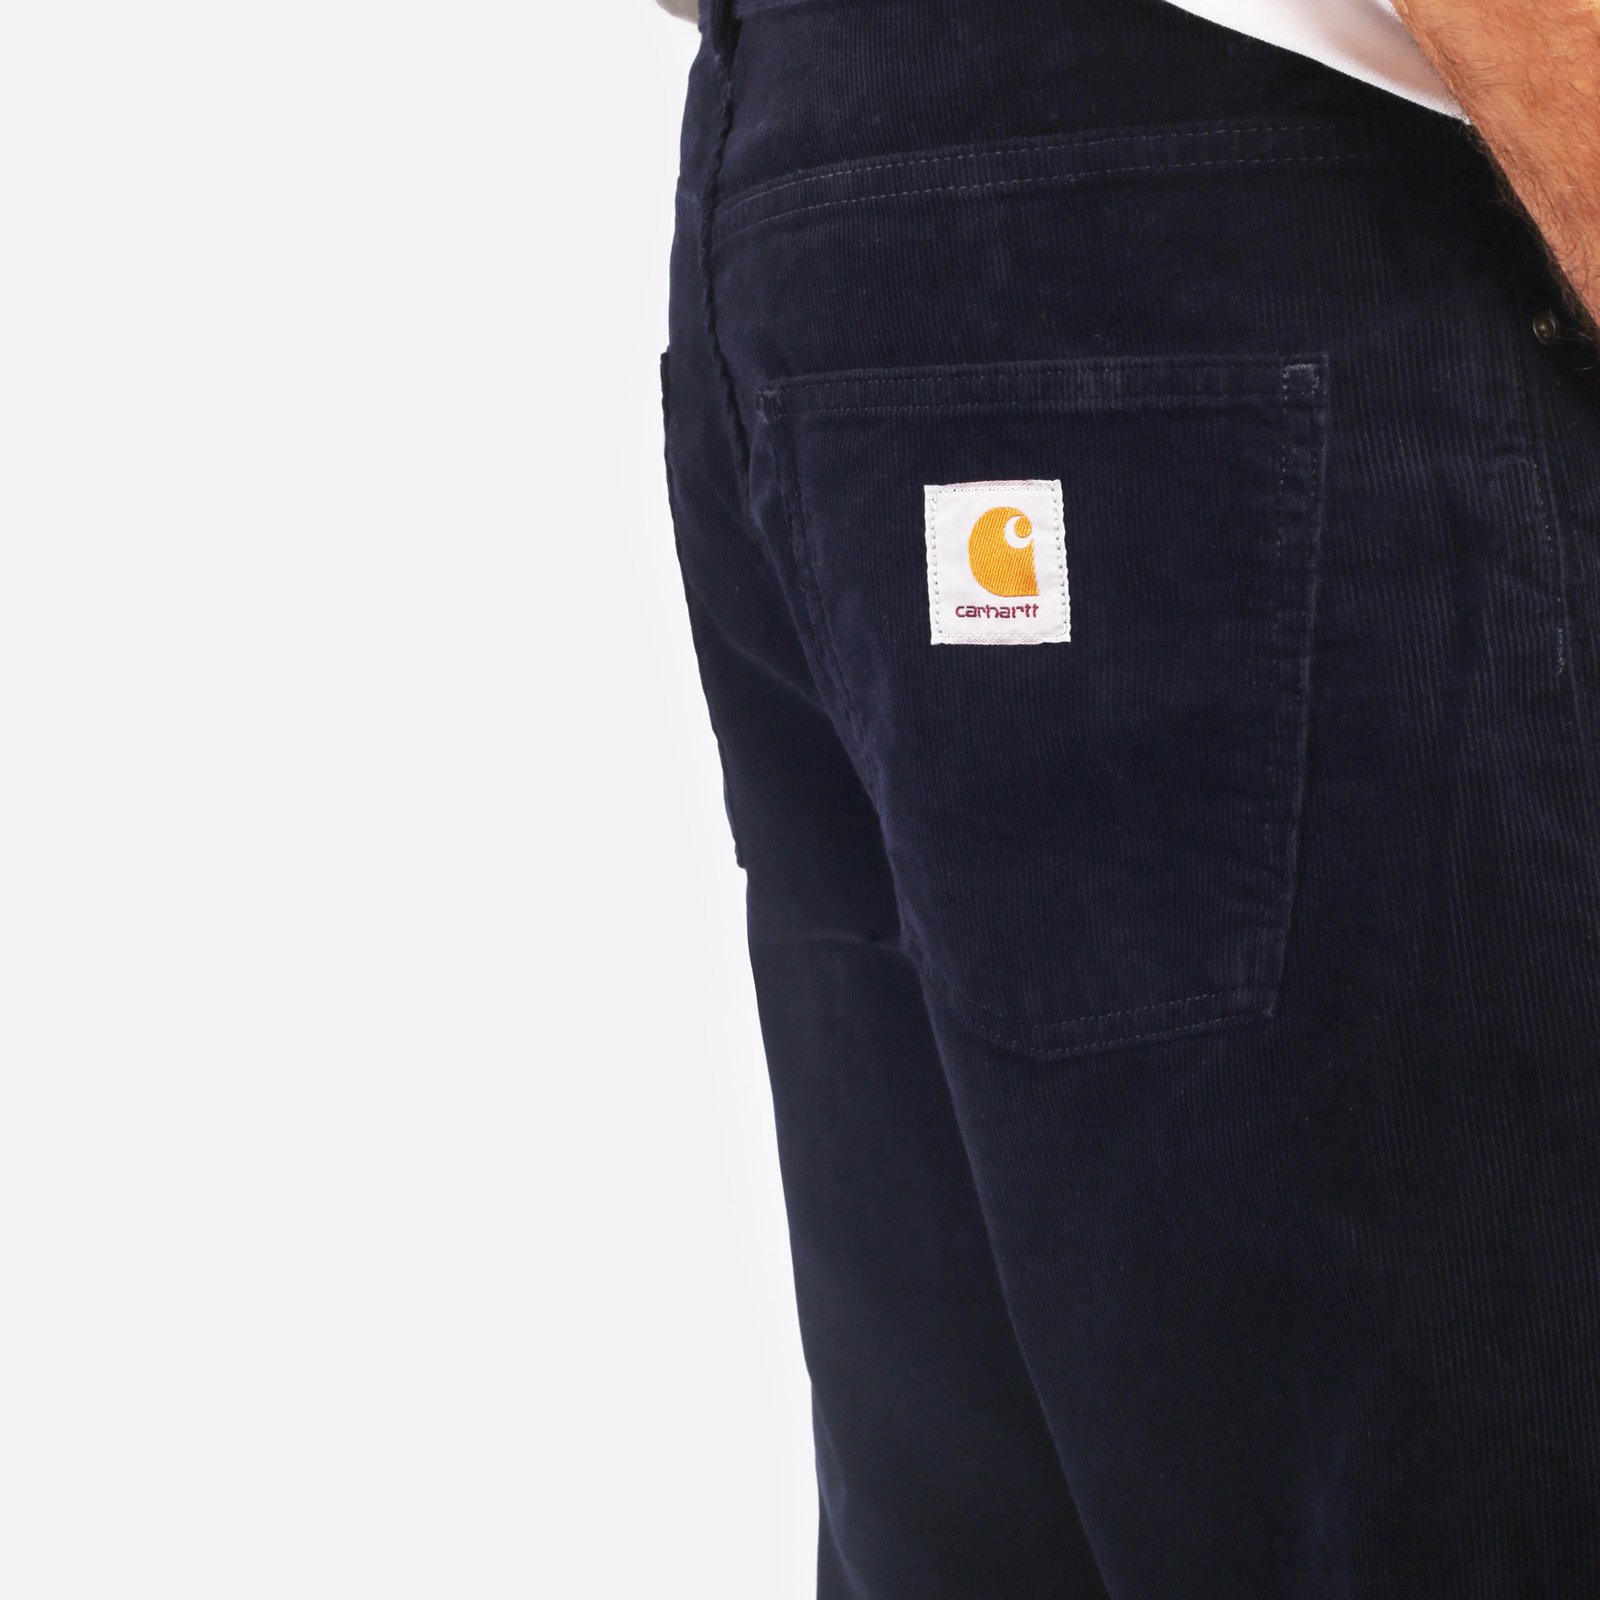 мужские брюки Carhartt WIP Newel Pant  (I031456-dark_navy)  - цена, описание, фото 4